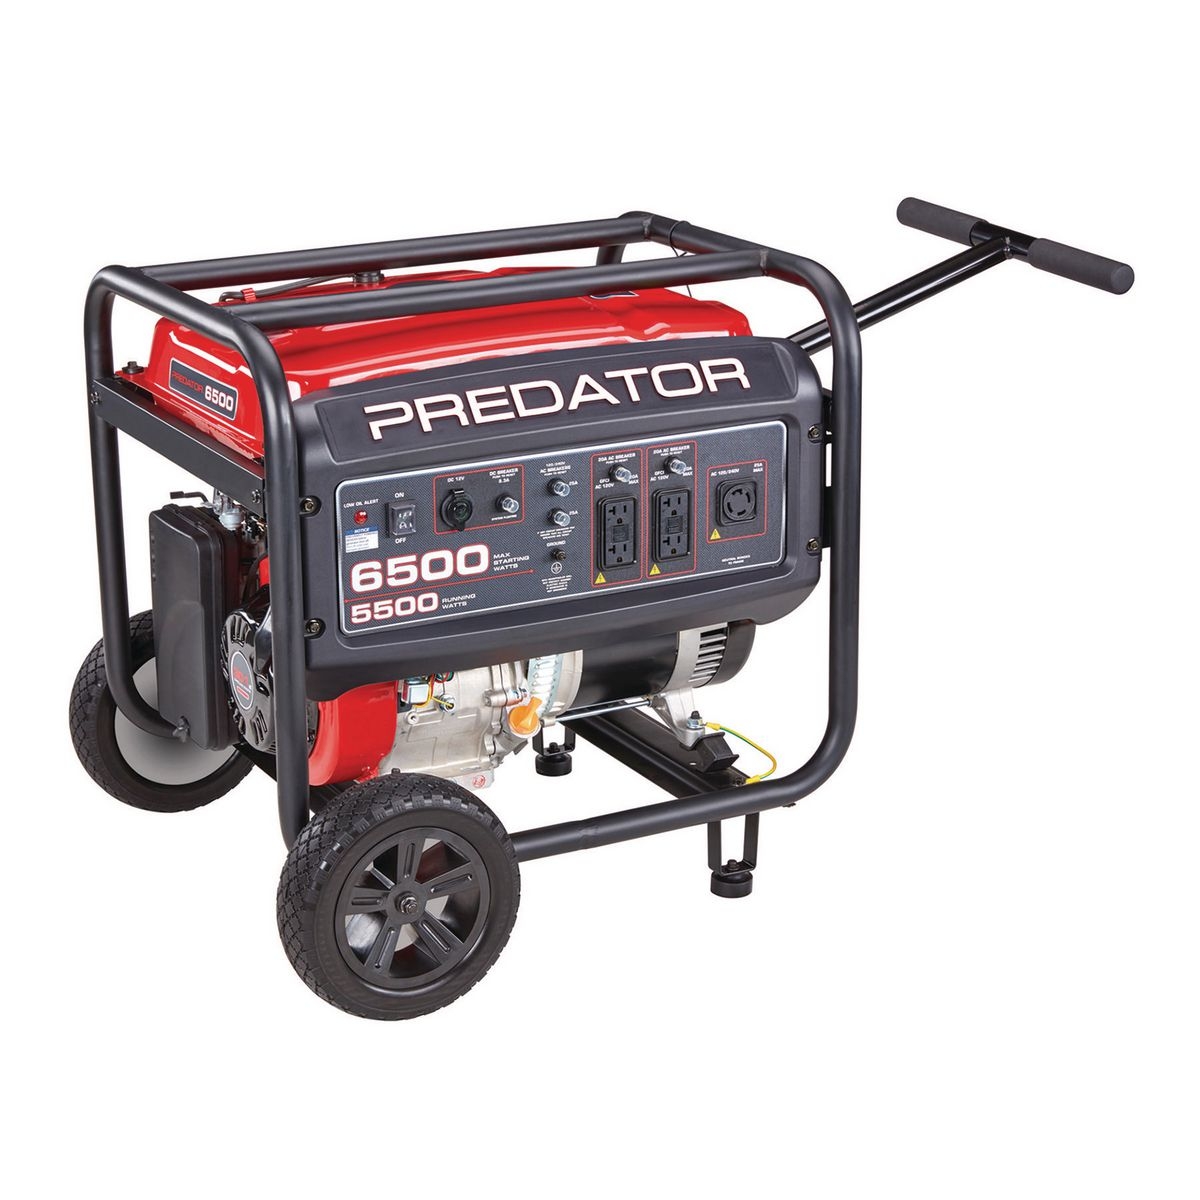 PREDATOR 6500 Watt Max Starting Gas Powered Generator - Item 63966 / 63967 / 63964 / 63965